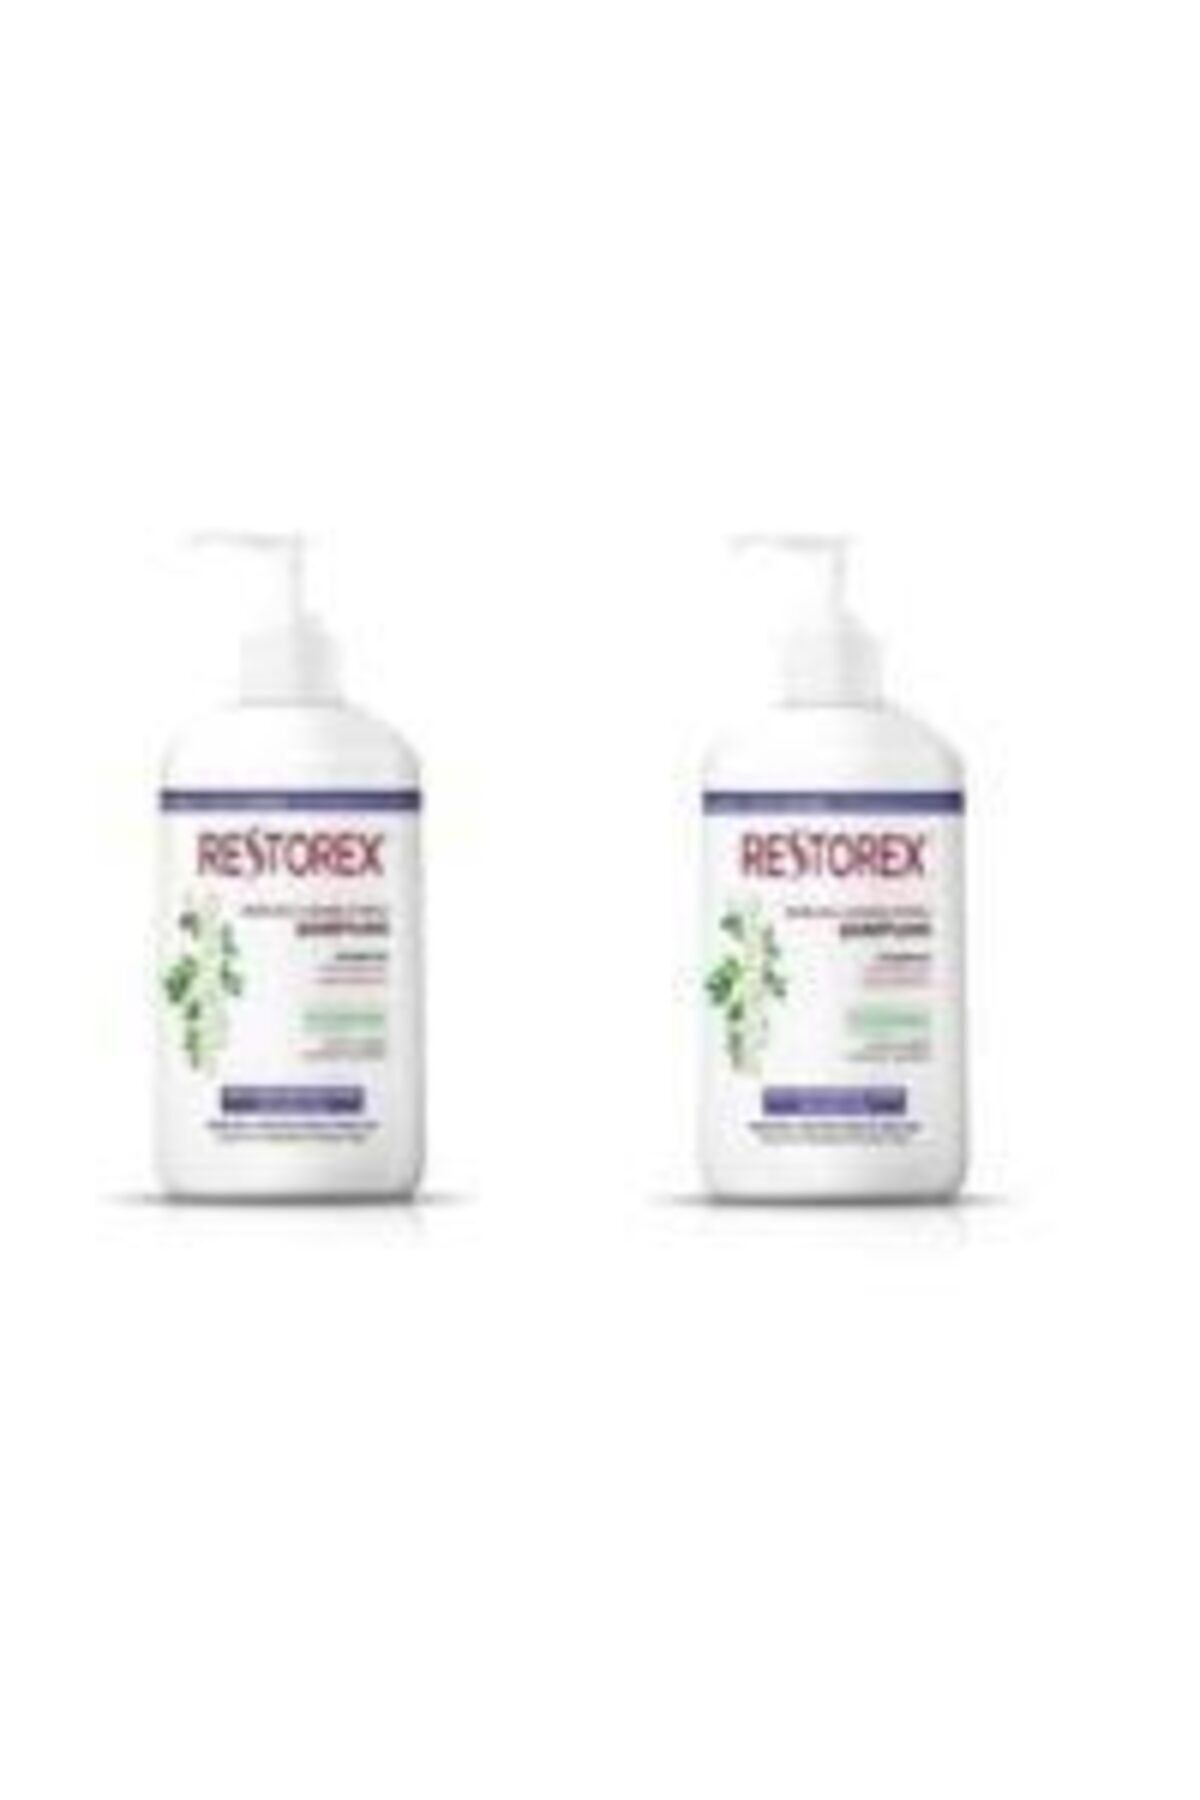 Restorex Sarmaşık Özlü Ekstra Direnç Şampuan 1000 ml X 2 Adet